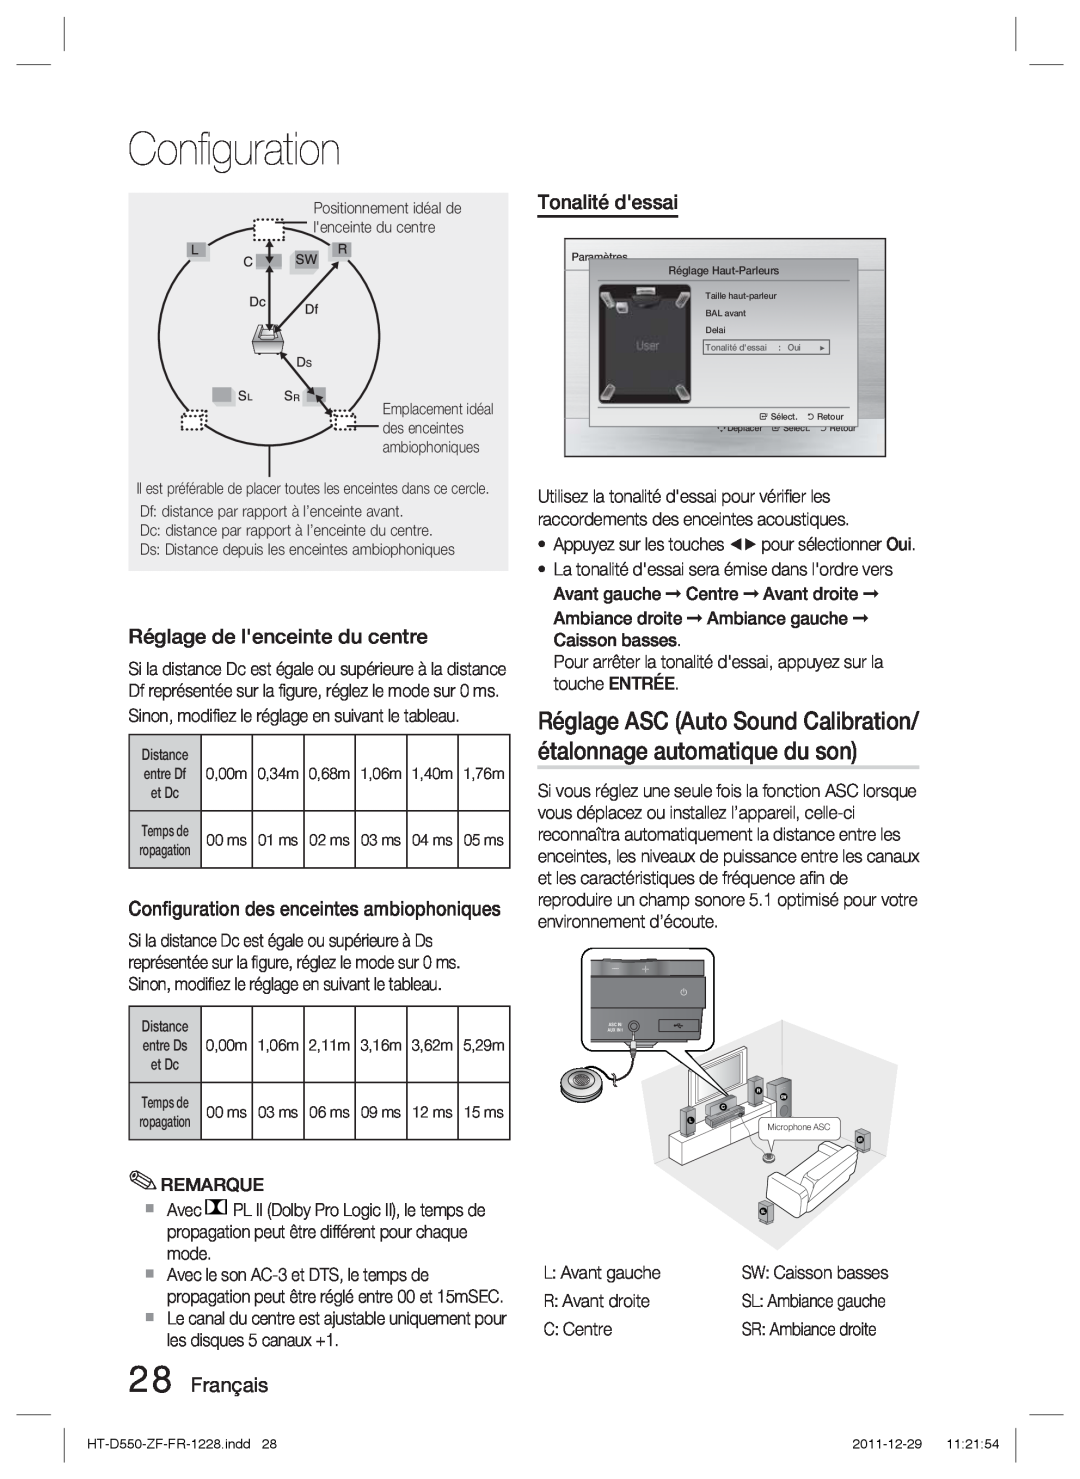 Samsung HT-D555/XE manual Réglage ASC Auto Sound Calibration/ étalonnage automatique du son, Réglage de lenceinte du centre 